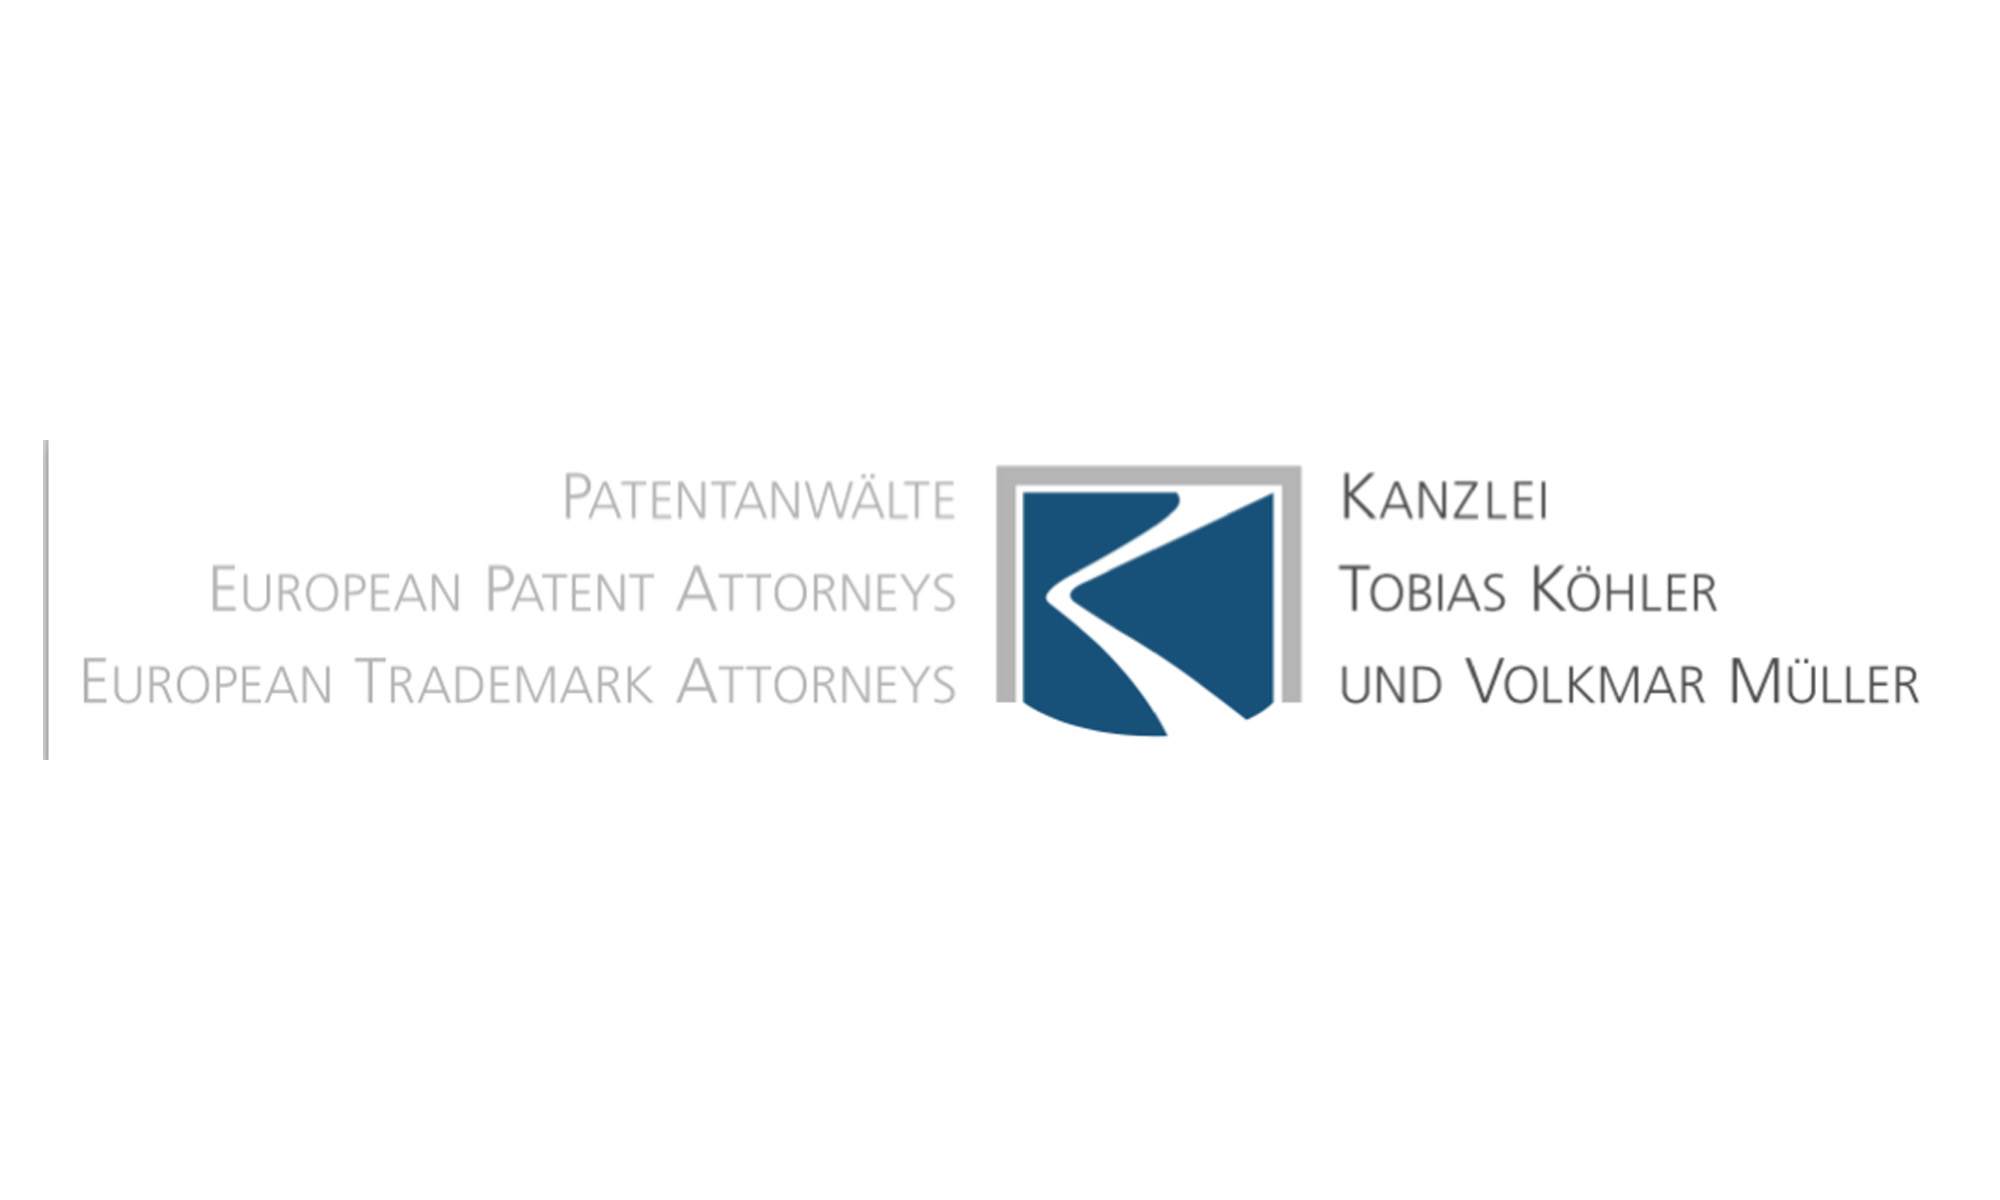 Patentanwälte Tobias Köhler und Volkmar Müller